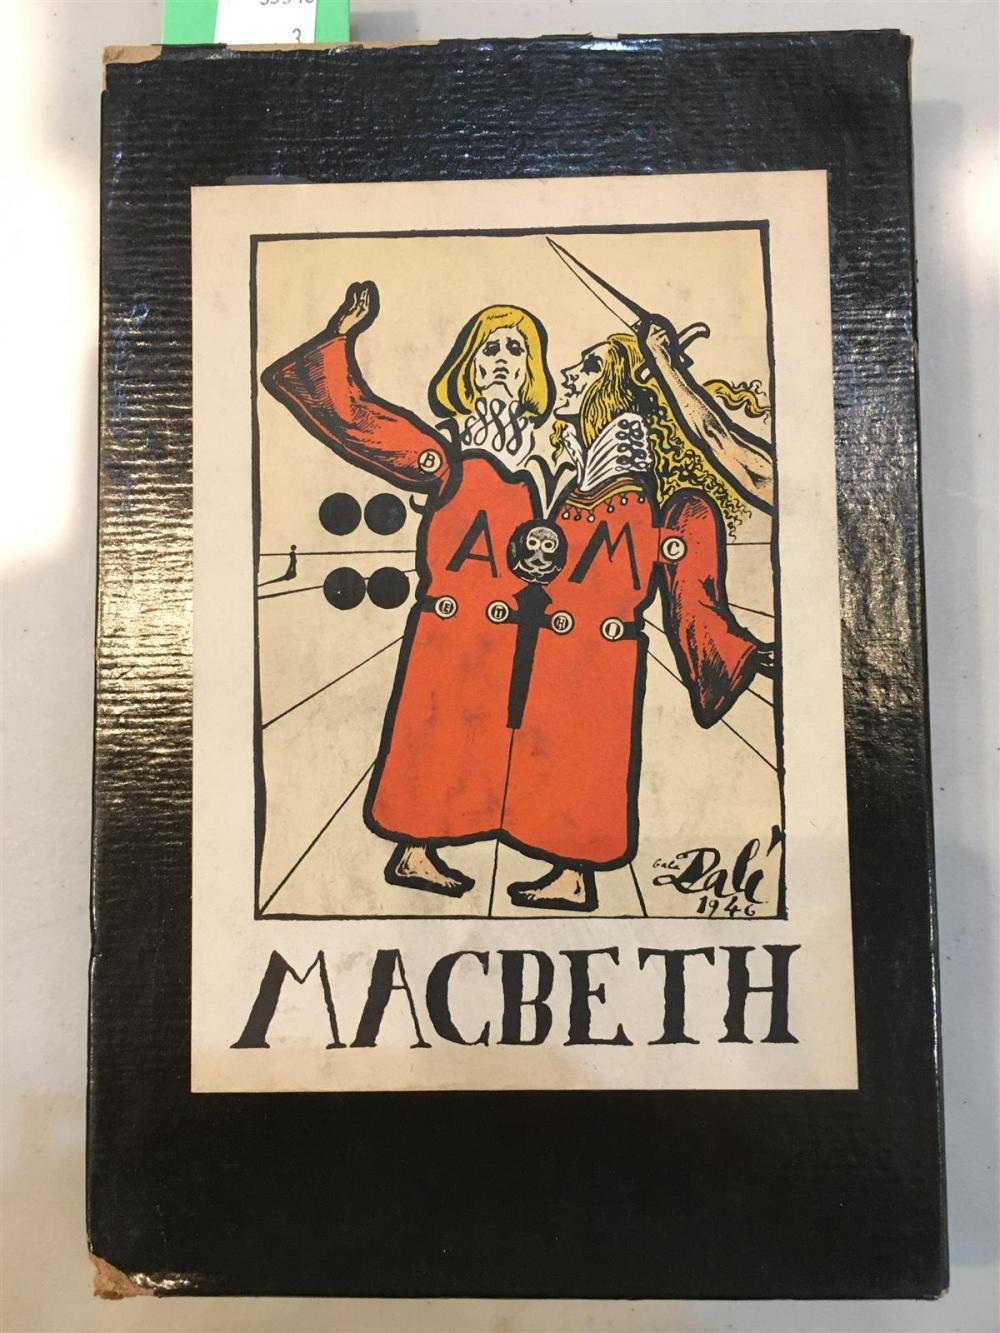 MACBETH ILLUSTRATED BY DALIMACBETH  33a47a